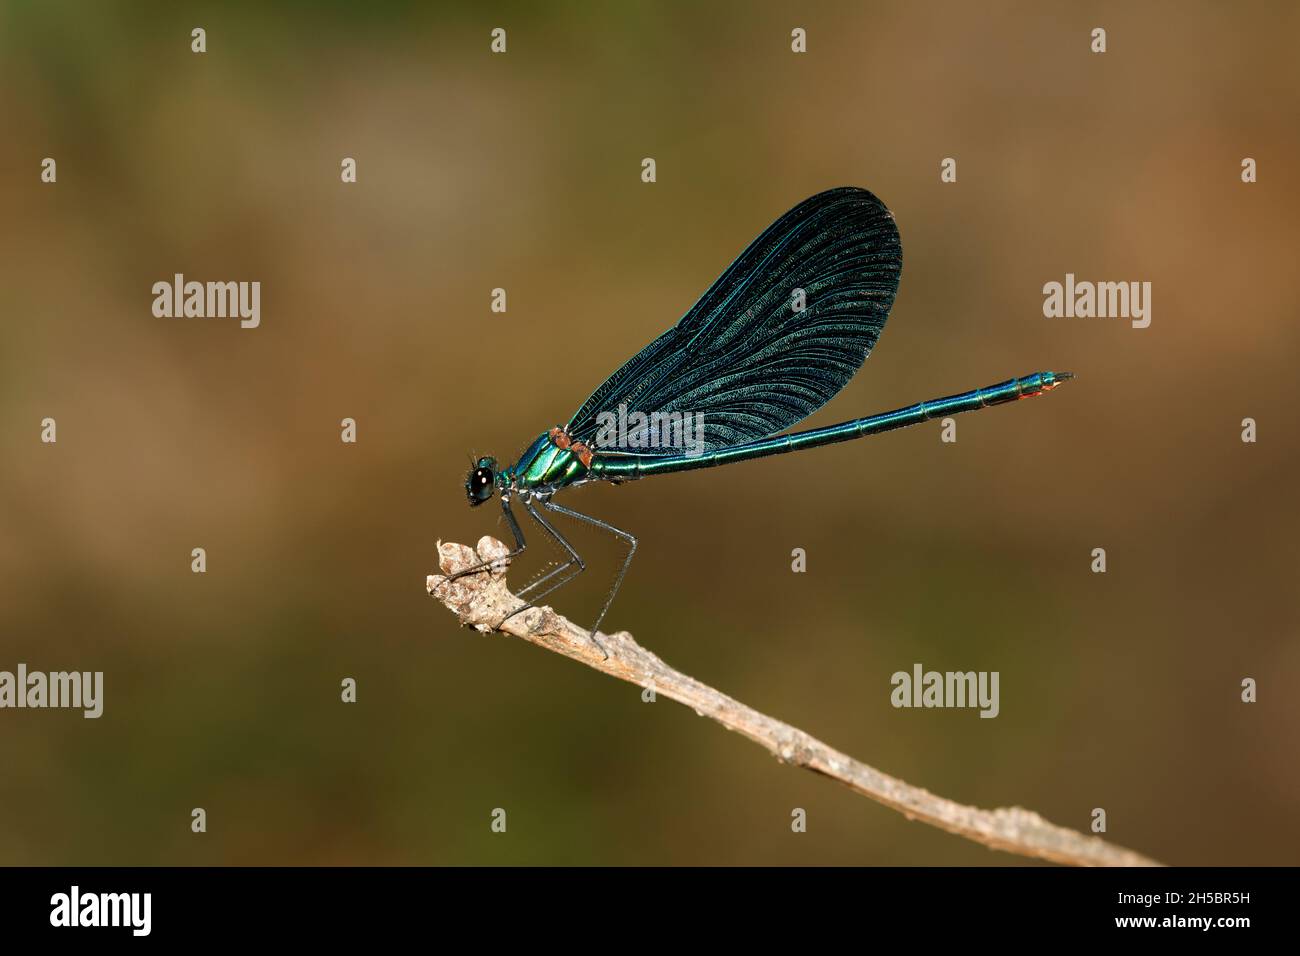 Hombre hermoso Demoiselle (Calopteryx virgo) se estableció en una ramita y visto en perfil Foto de stock